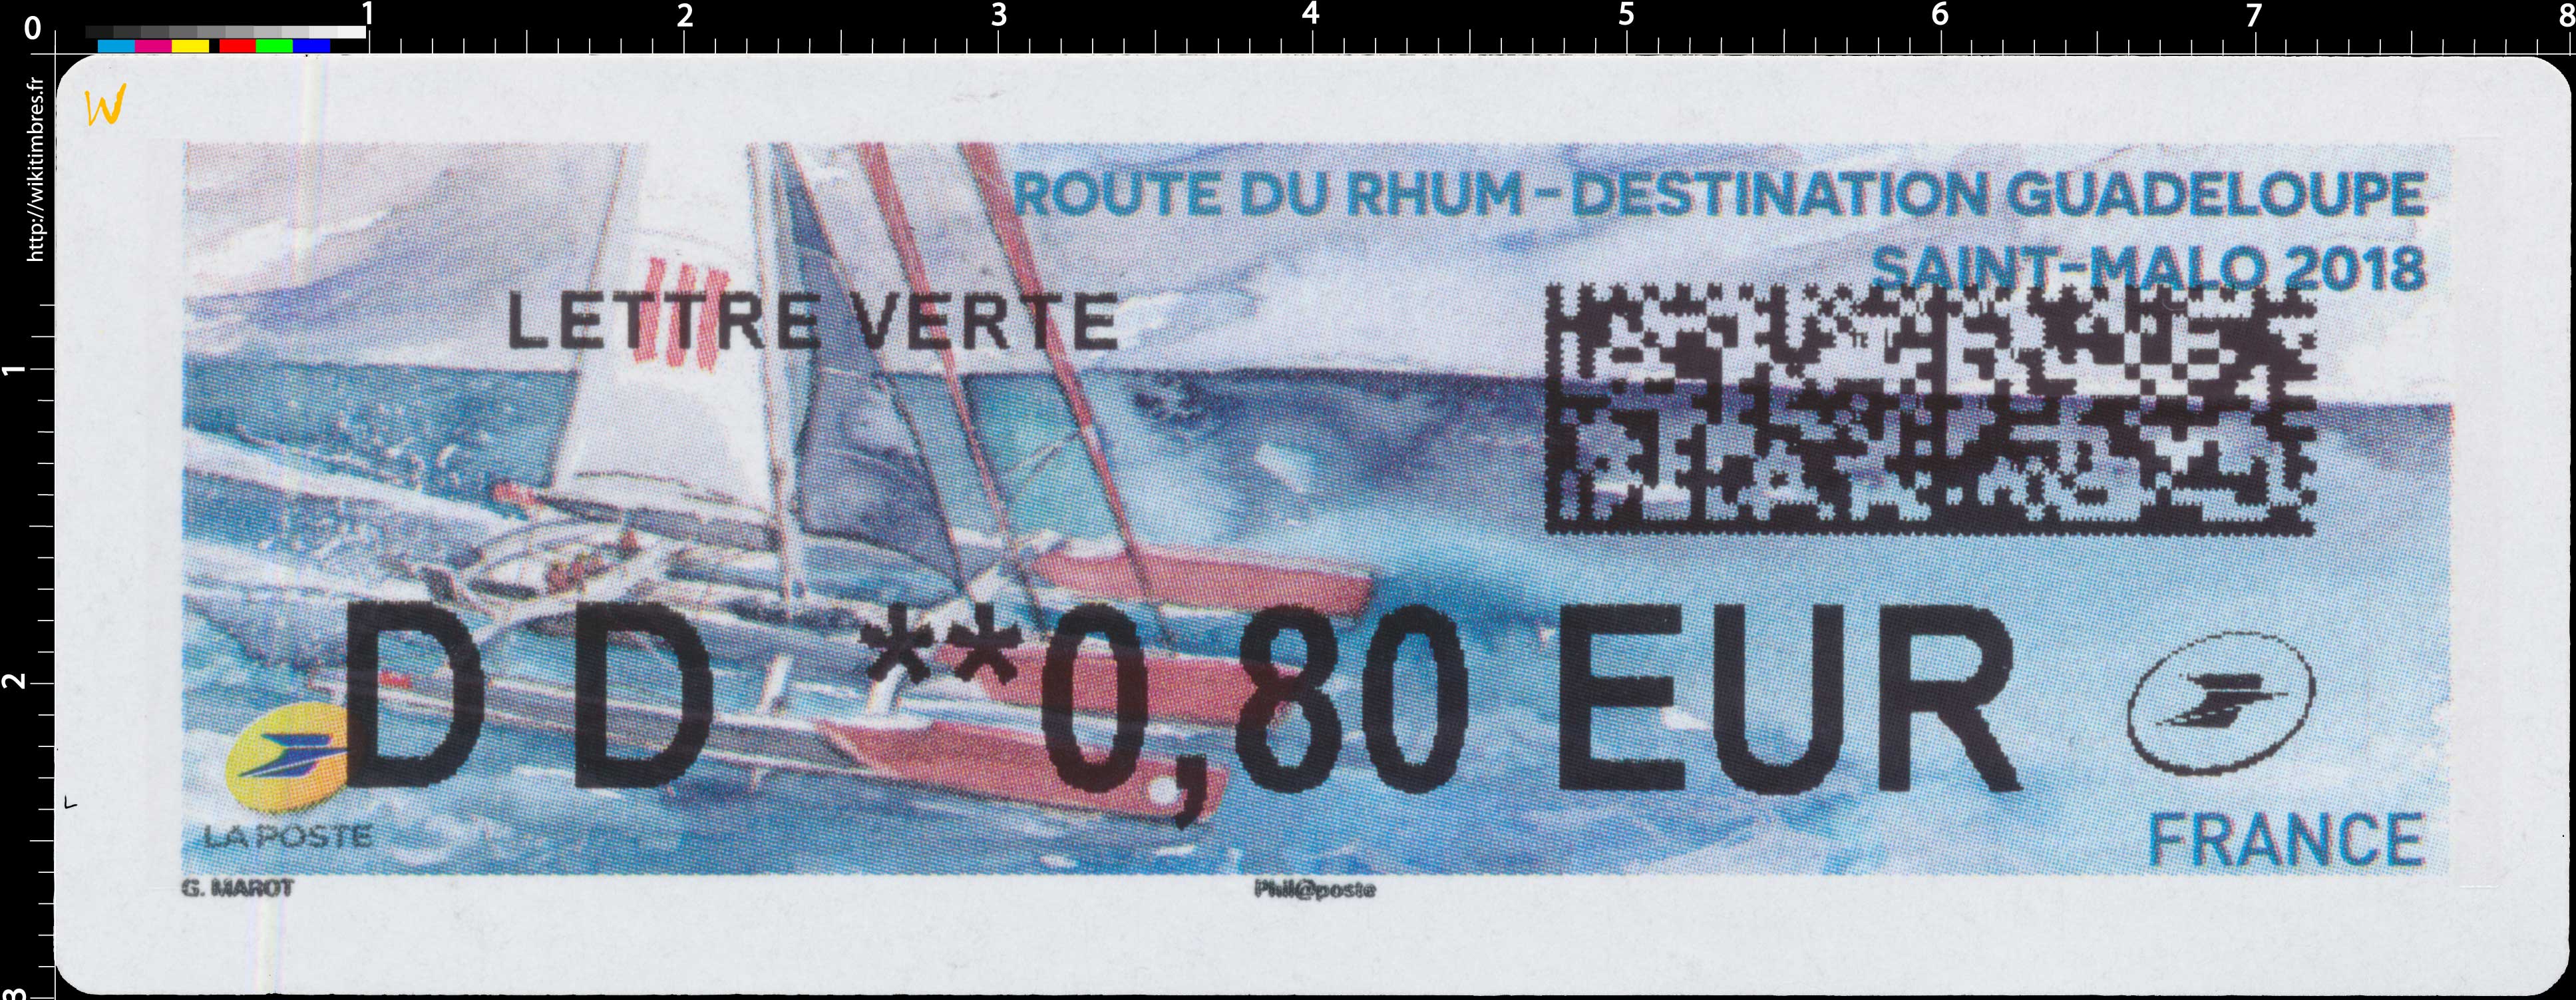 2018 Route du rhum - Destination Guadeloupe - Saint-Malo 